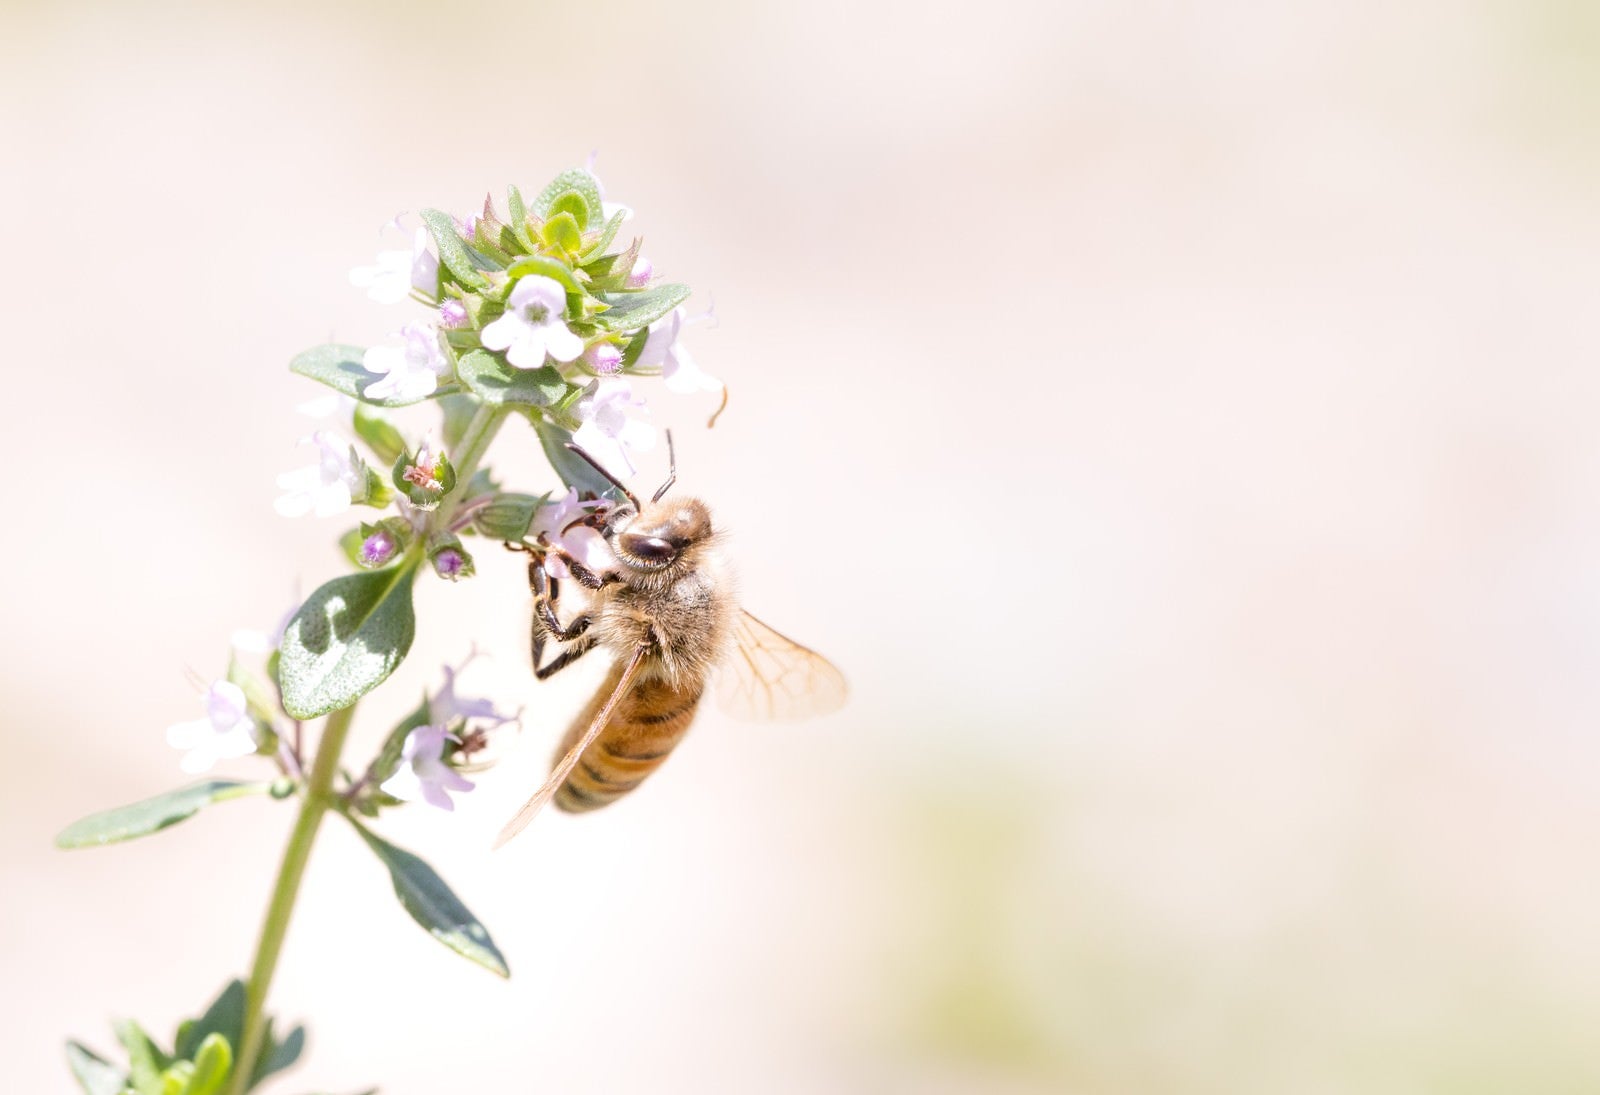 「吸蜜中のミツバチ」の写真